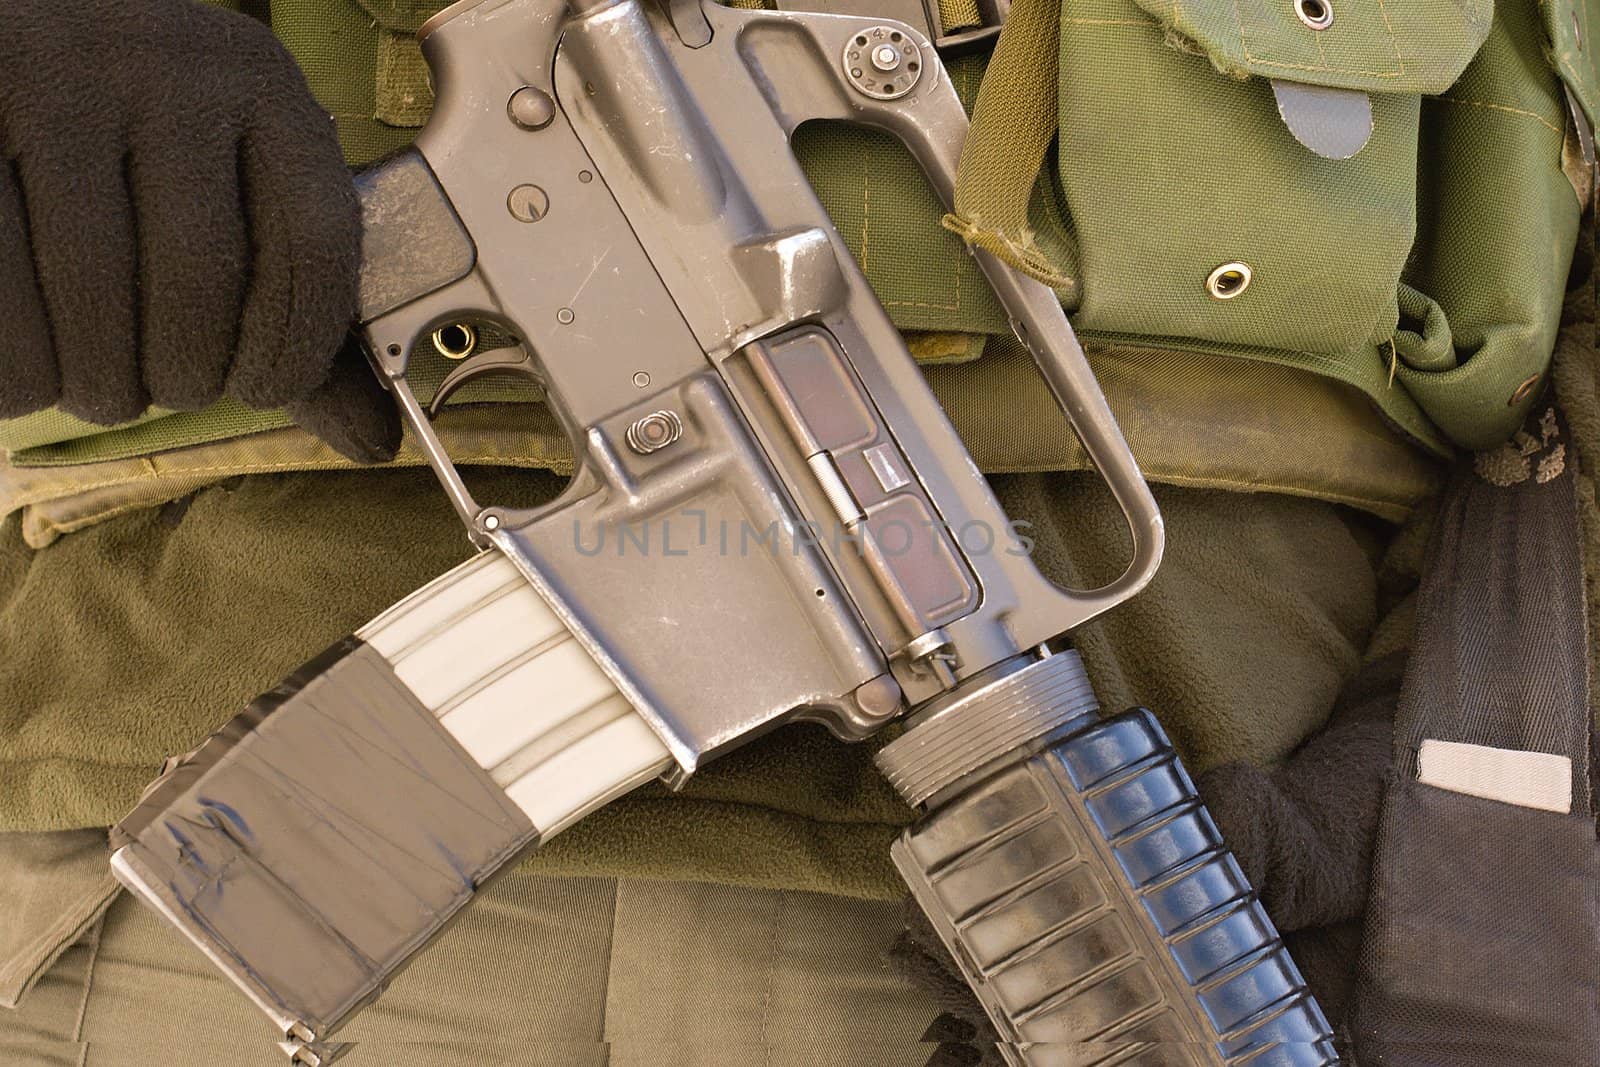 Israeli soldier with Submachine gun on her head